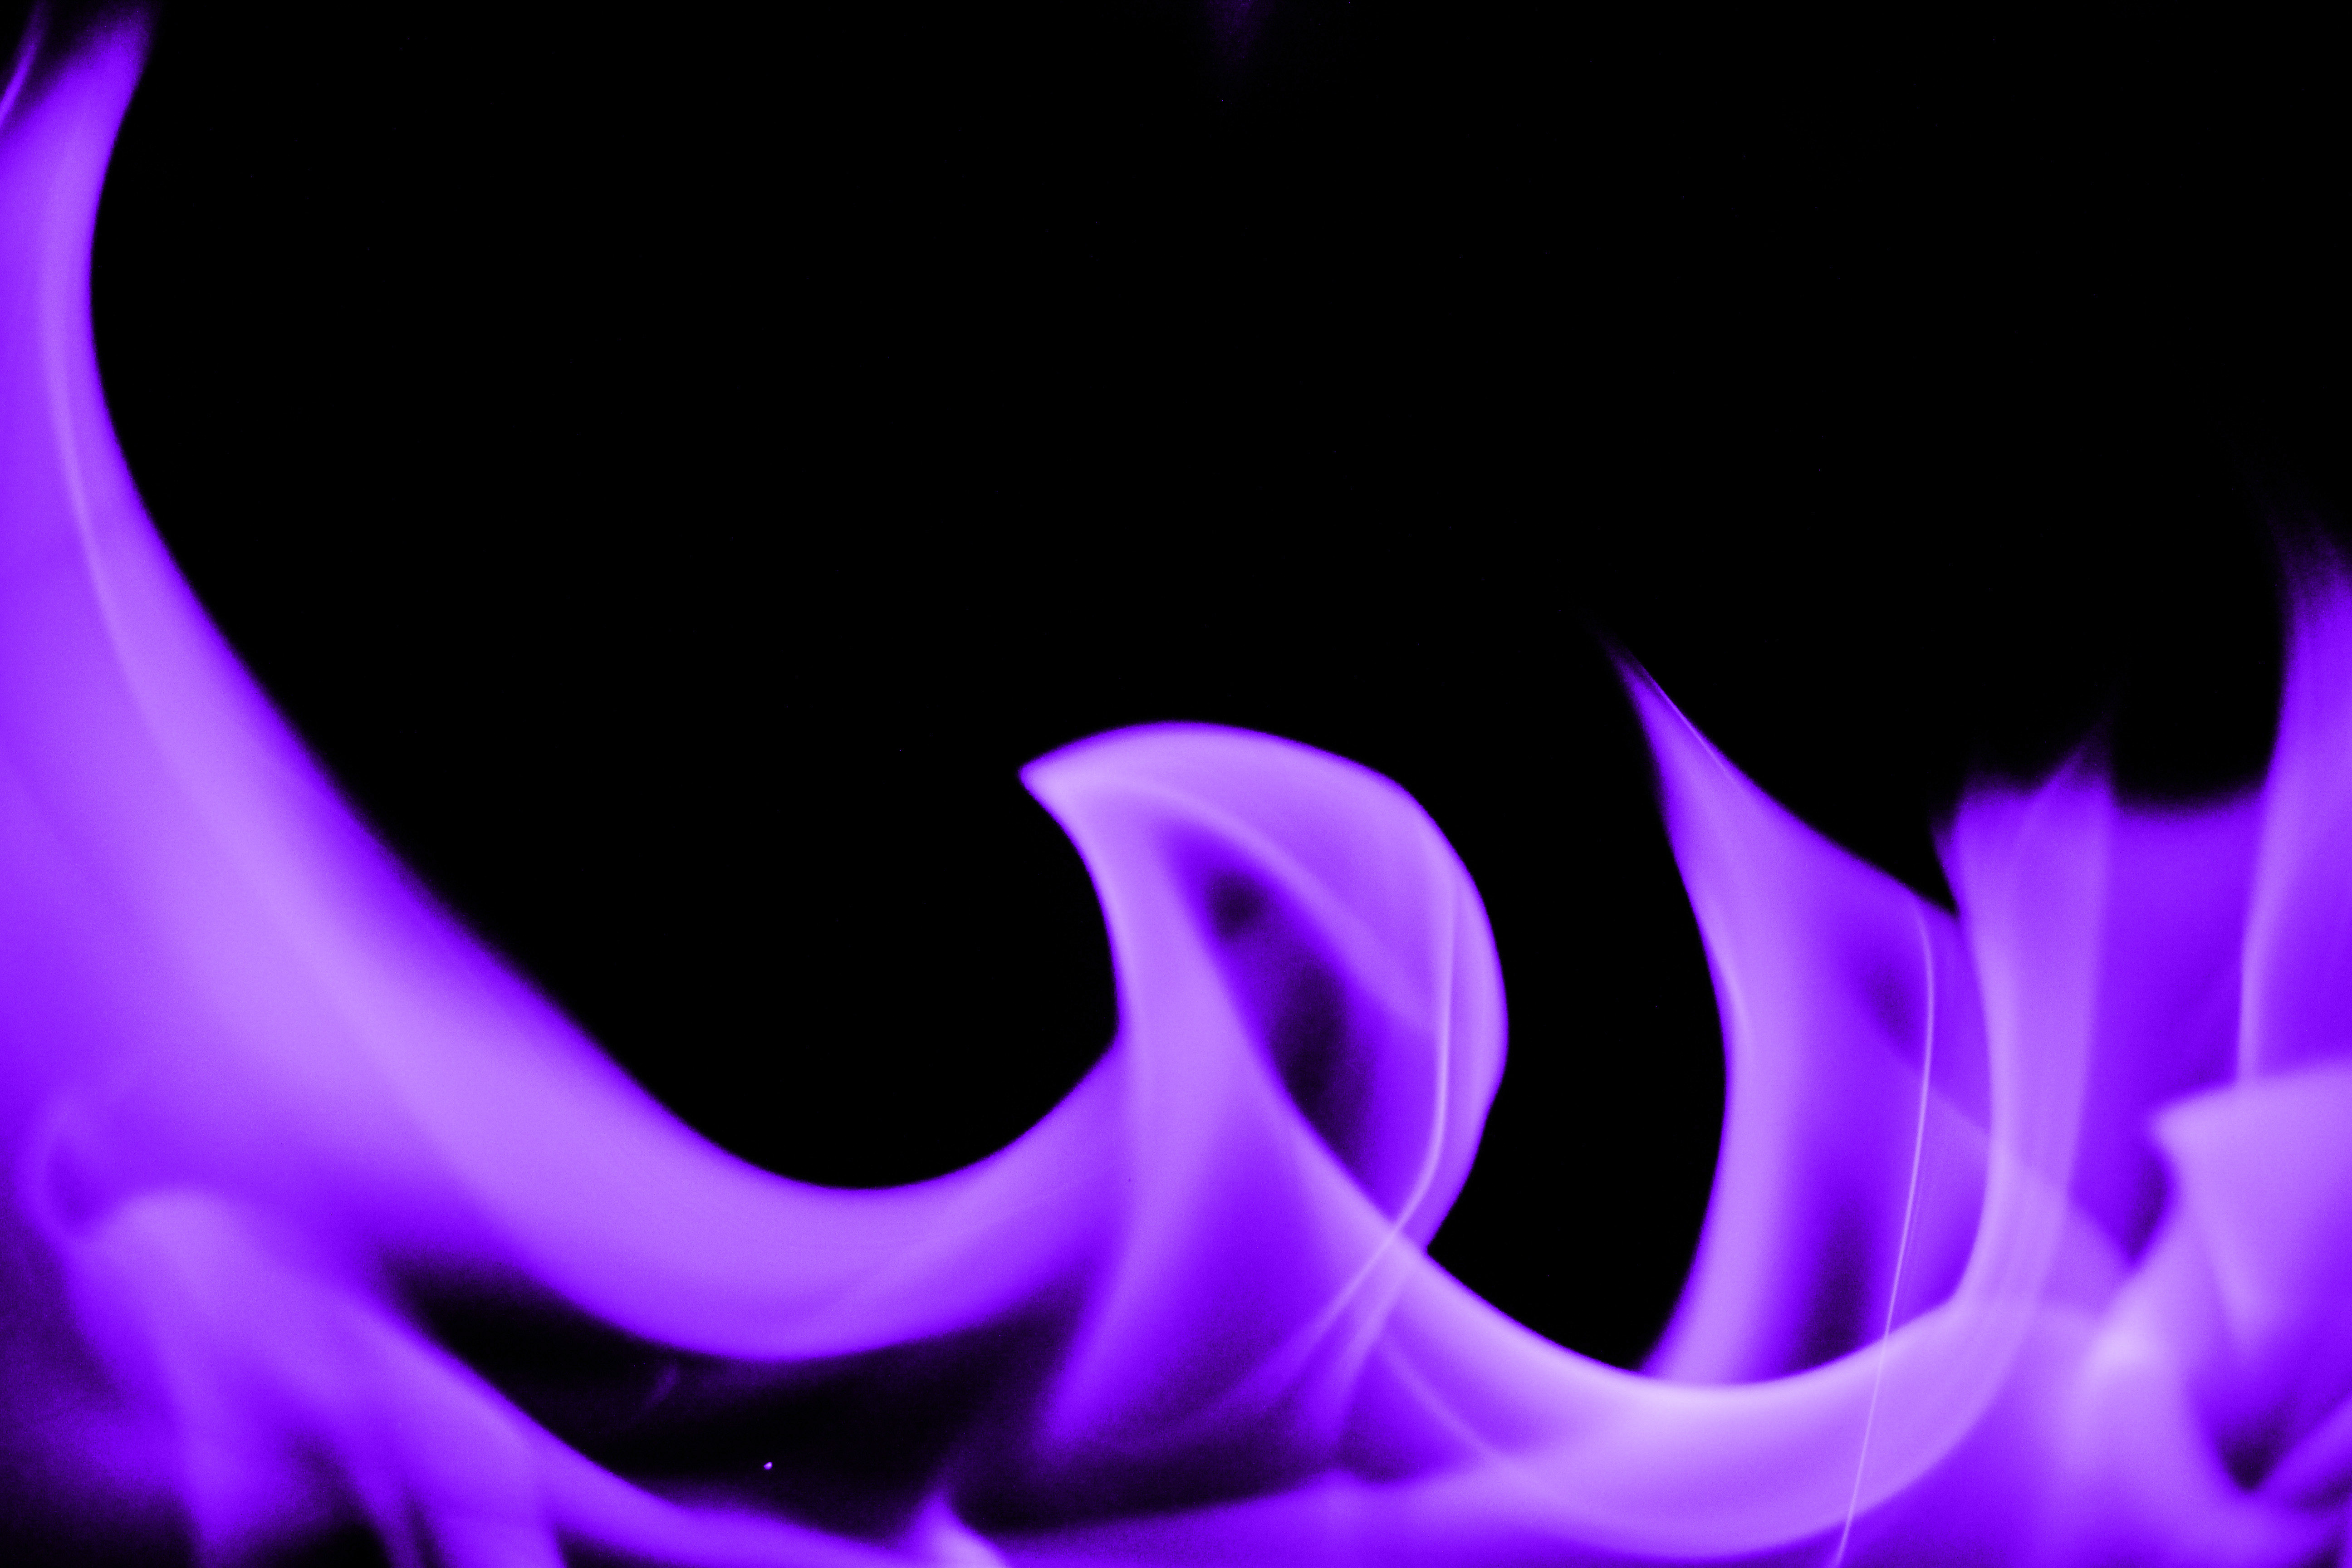 Dark Purple Fire Flames In Black Background HD Dark Purple Wallpapers  HD  Wallpapers  ID 55812